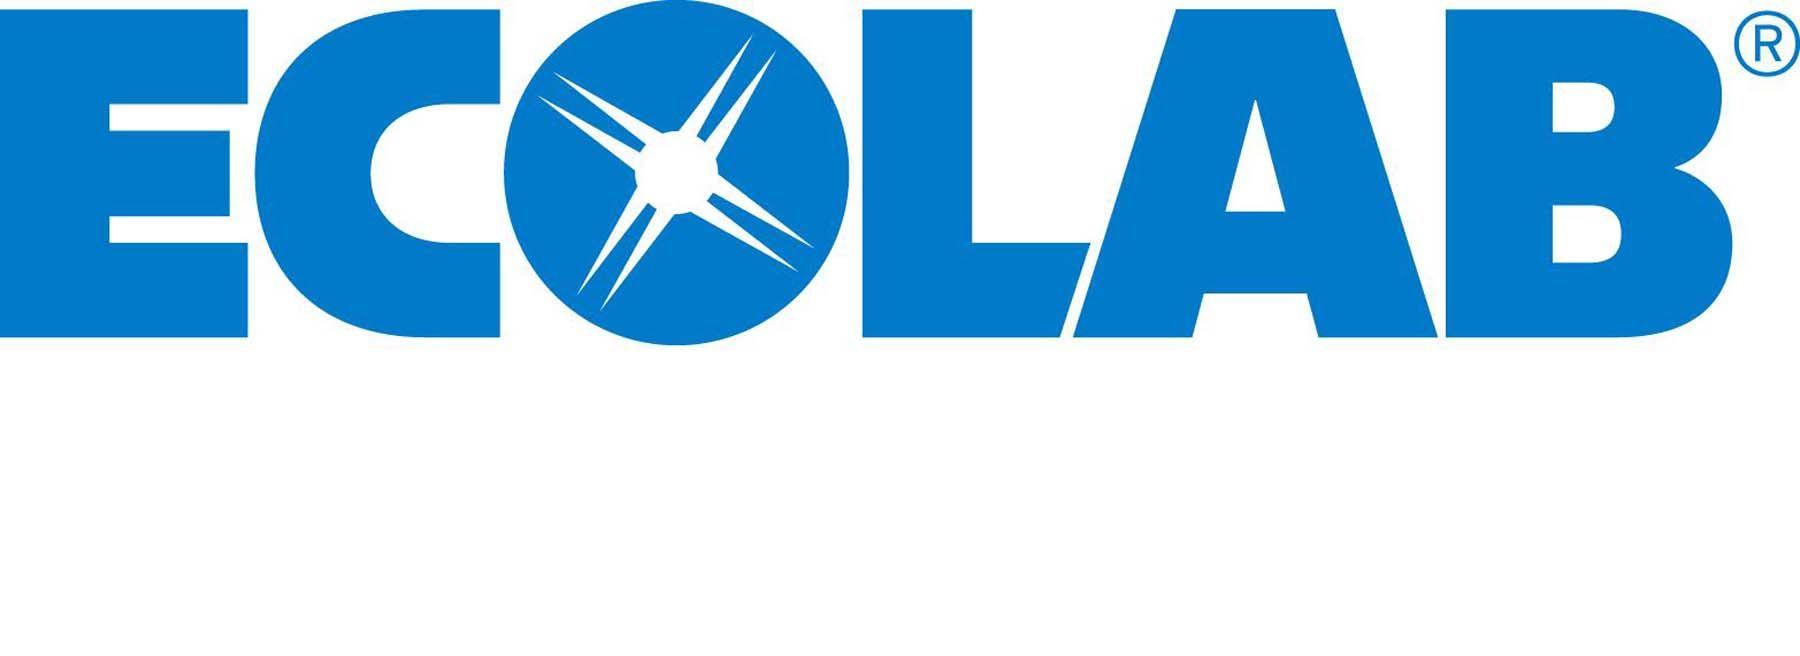 Ecolab Company Logo - Ecolab - LINSTRAM